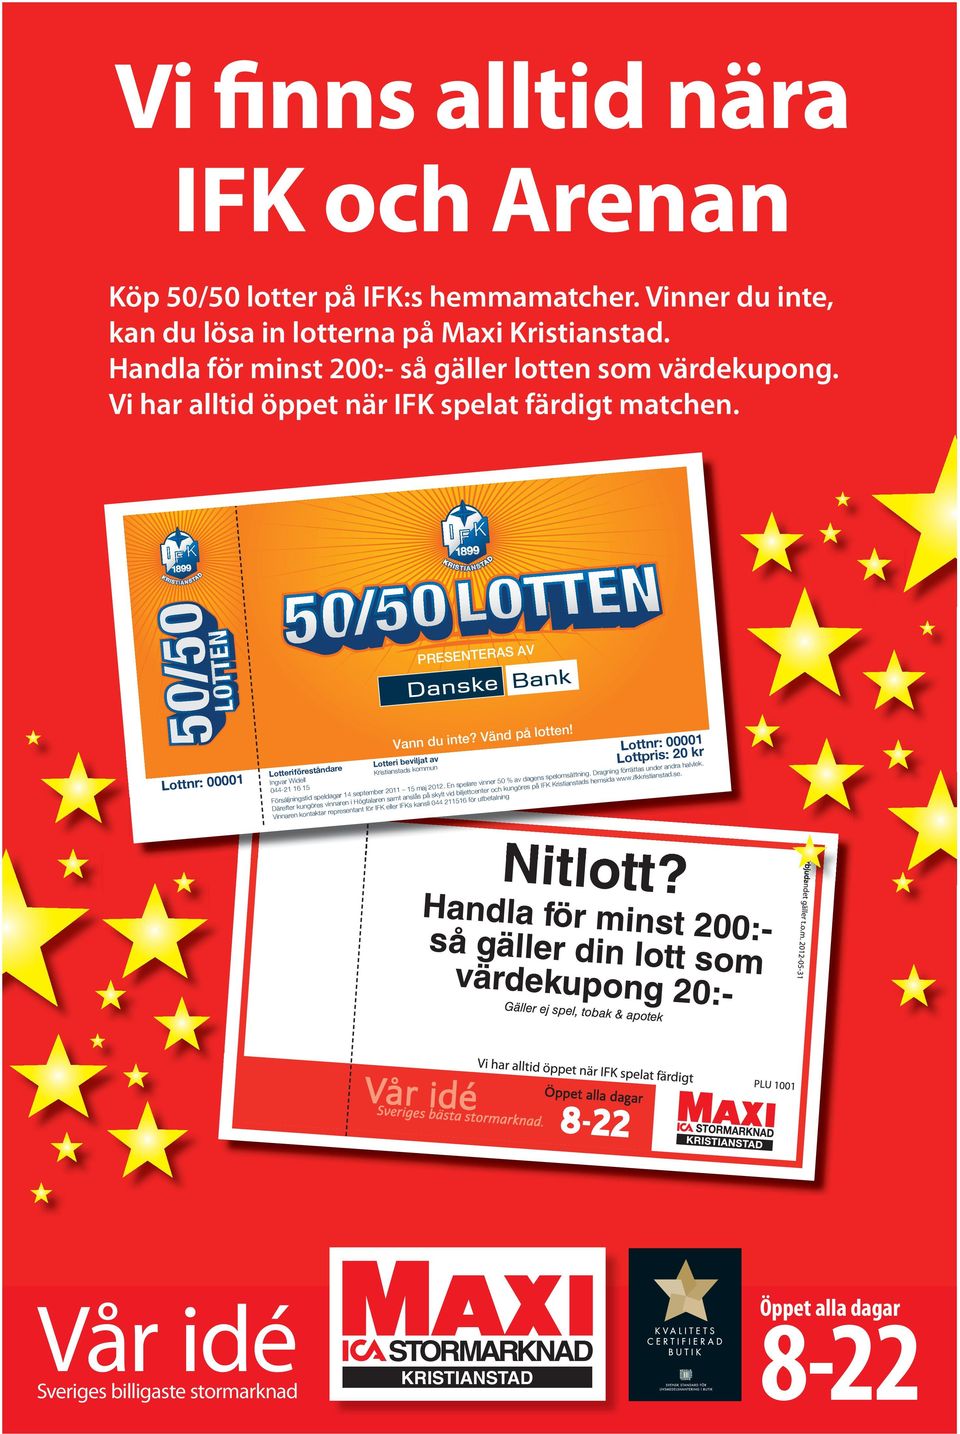 Lotteri beviljat av Kristianstads kommun Lottnr: 00001 Ingvar Widell 044-16 15 Försäljningstid speldagar 14 september 2011 15 maj 2012. En spelare vinner 50 % av dagens spelomsättning.